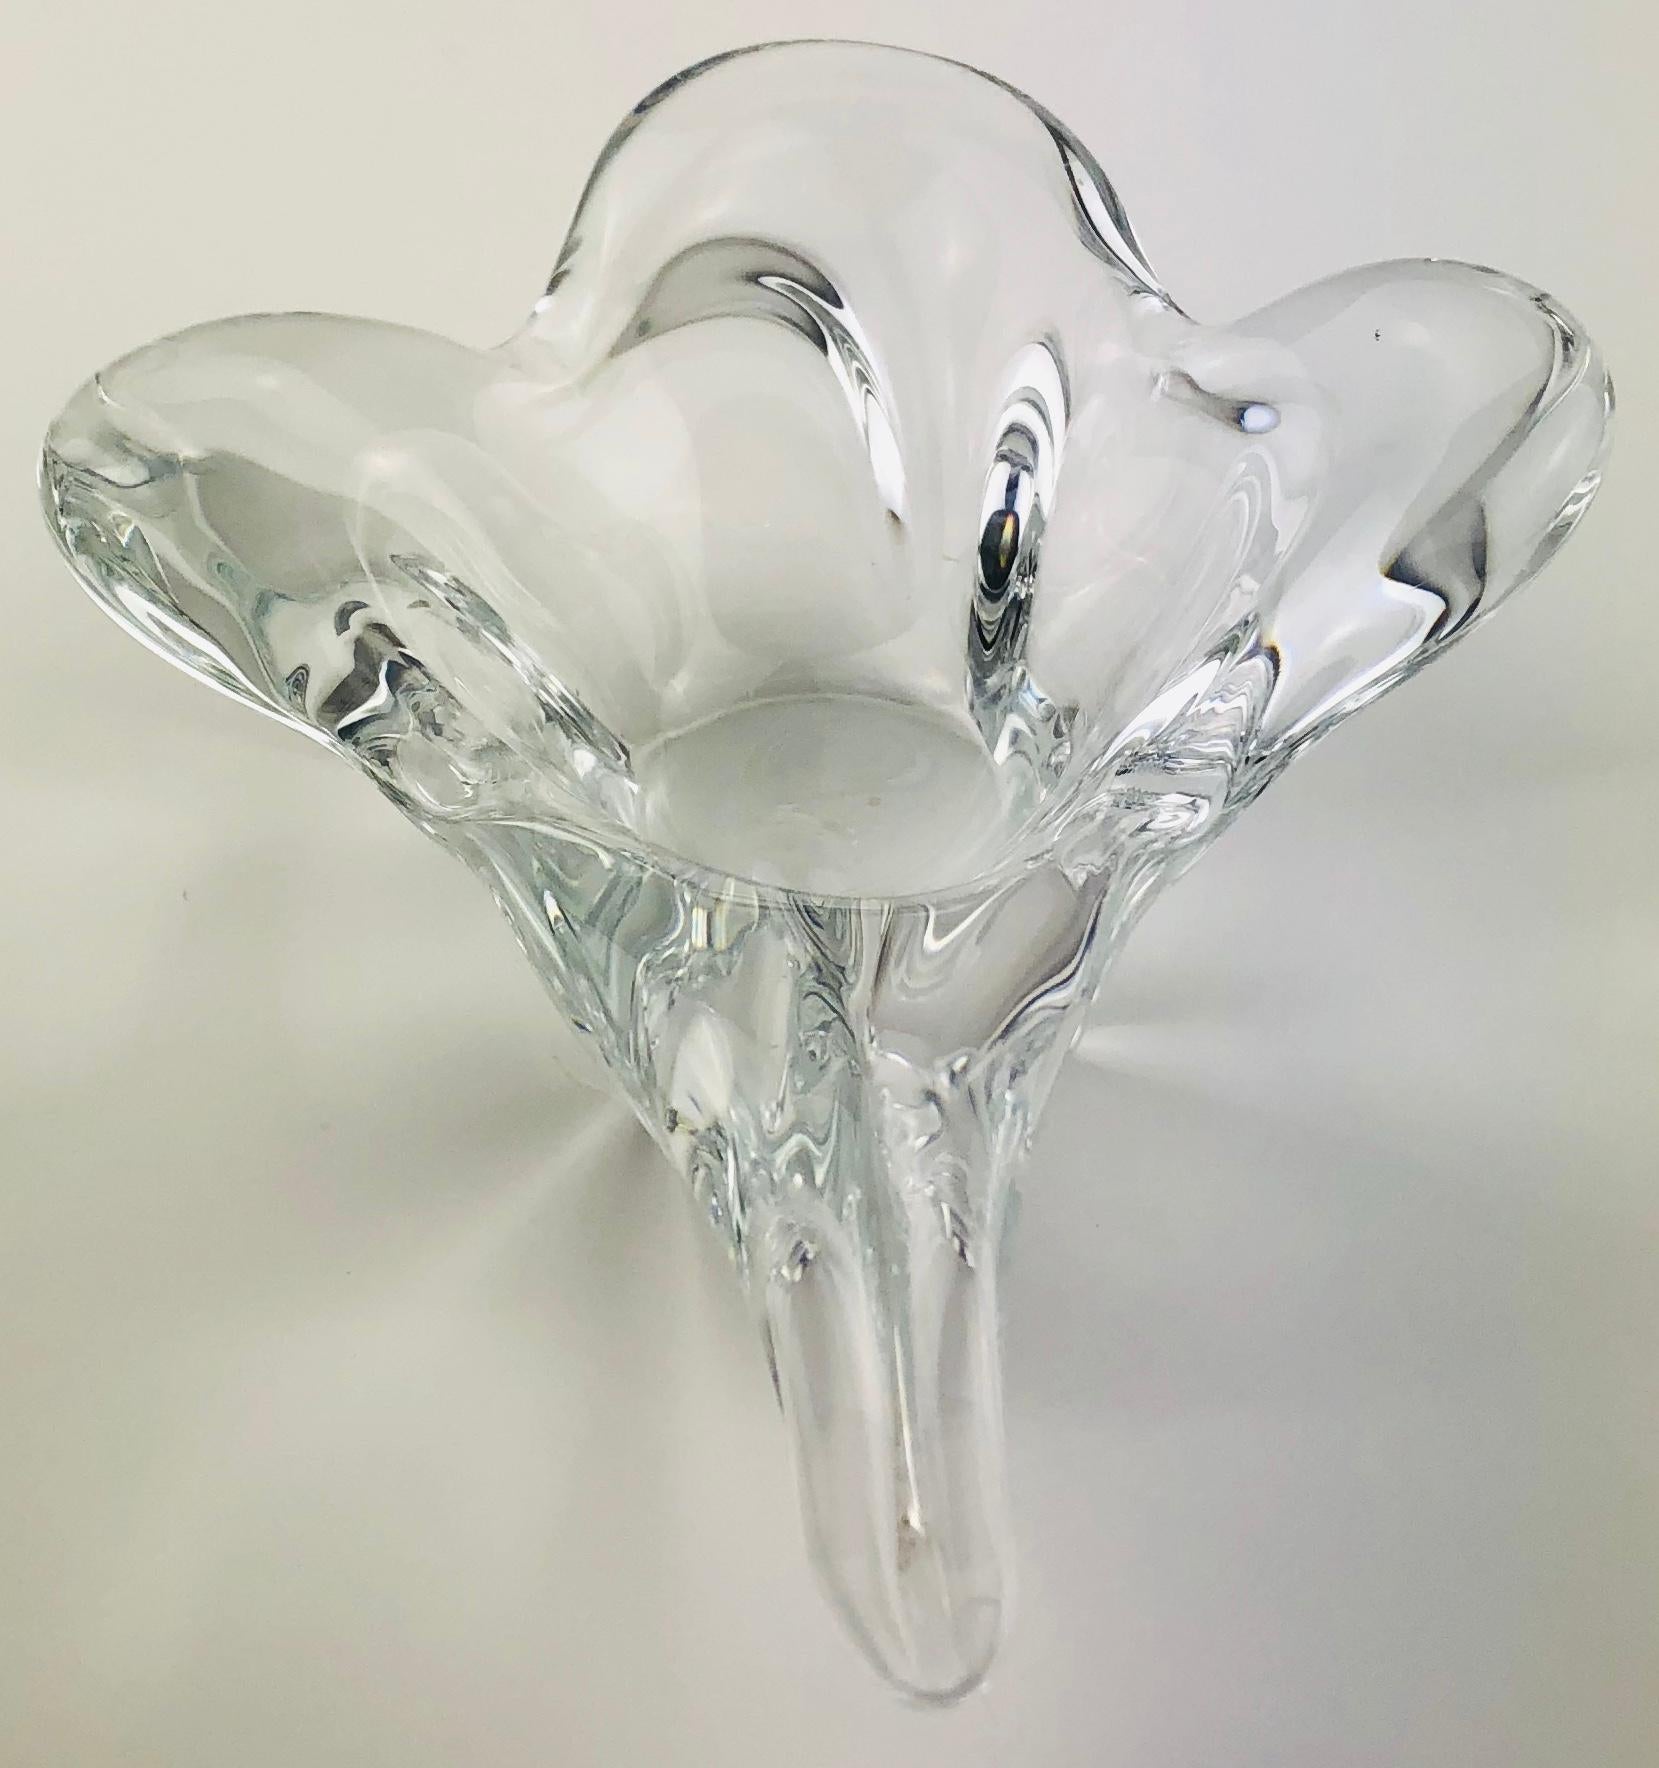 Schöne Senf- oder Vorspeisenschale aus klarem Kristall, gestempelt Bayet. Dieses bekannte Kristallkunsthaus befand sich in Vannes-Le-Chatel, Frankreich.

Ab 1963 begann die Glashütte in Vannes Le Châtel mit der Herstellung von Bleikristall, wie die